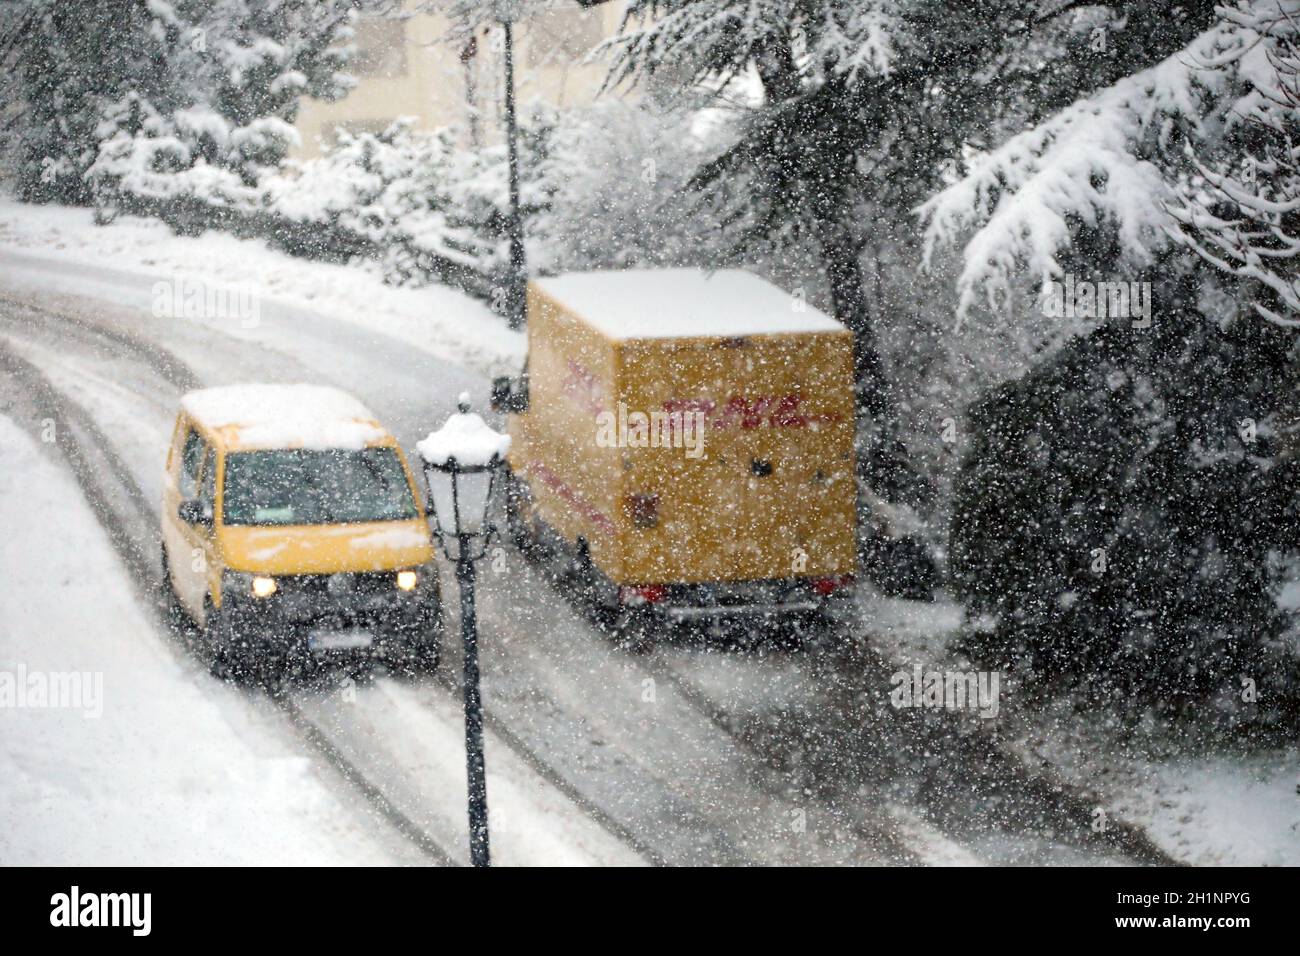 Auch die Fahrer der Zustellfahrzeuge der Post haben mit dem Neuschnee zu kämpfen  Wintereinbruch im Landkreis-Breisgau Hochschwarzwald. Wie hier im no Stock Photo